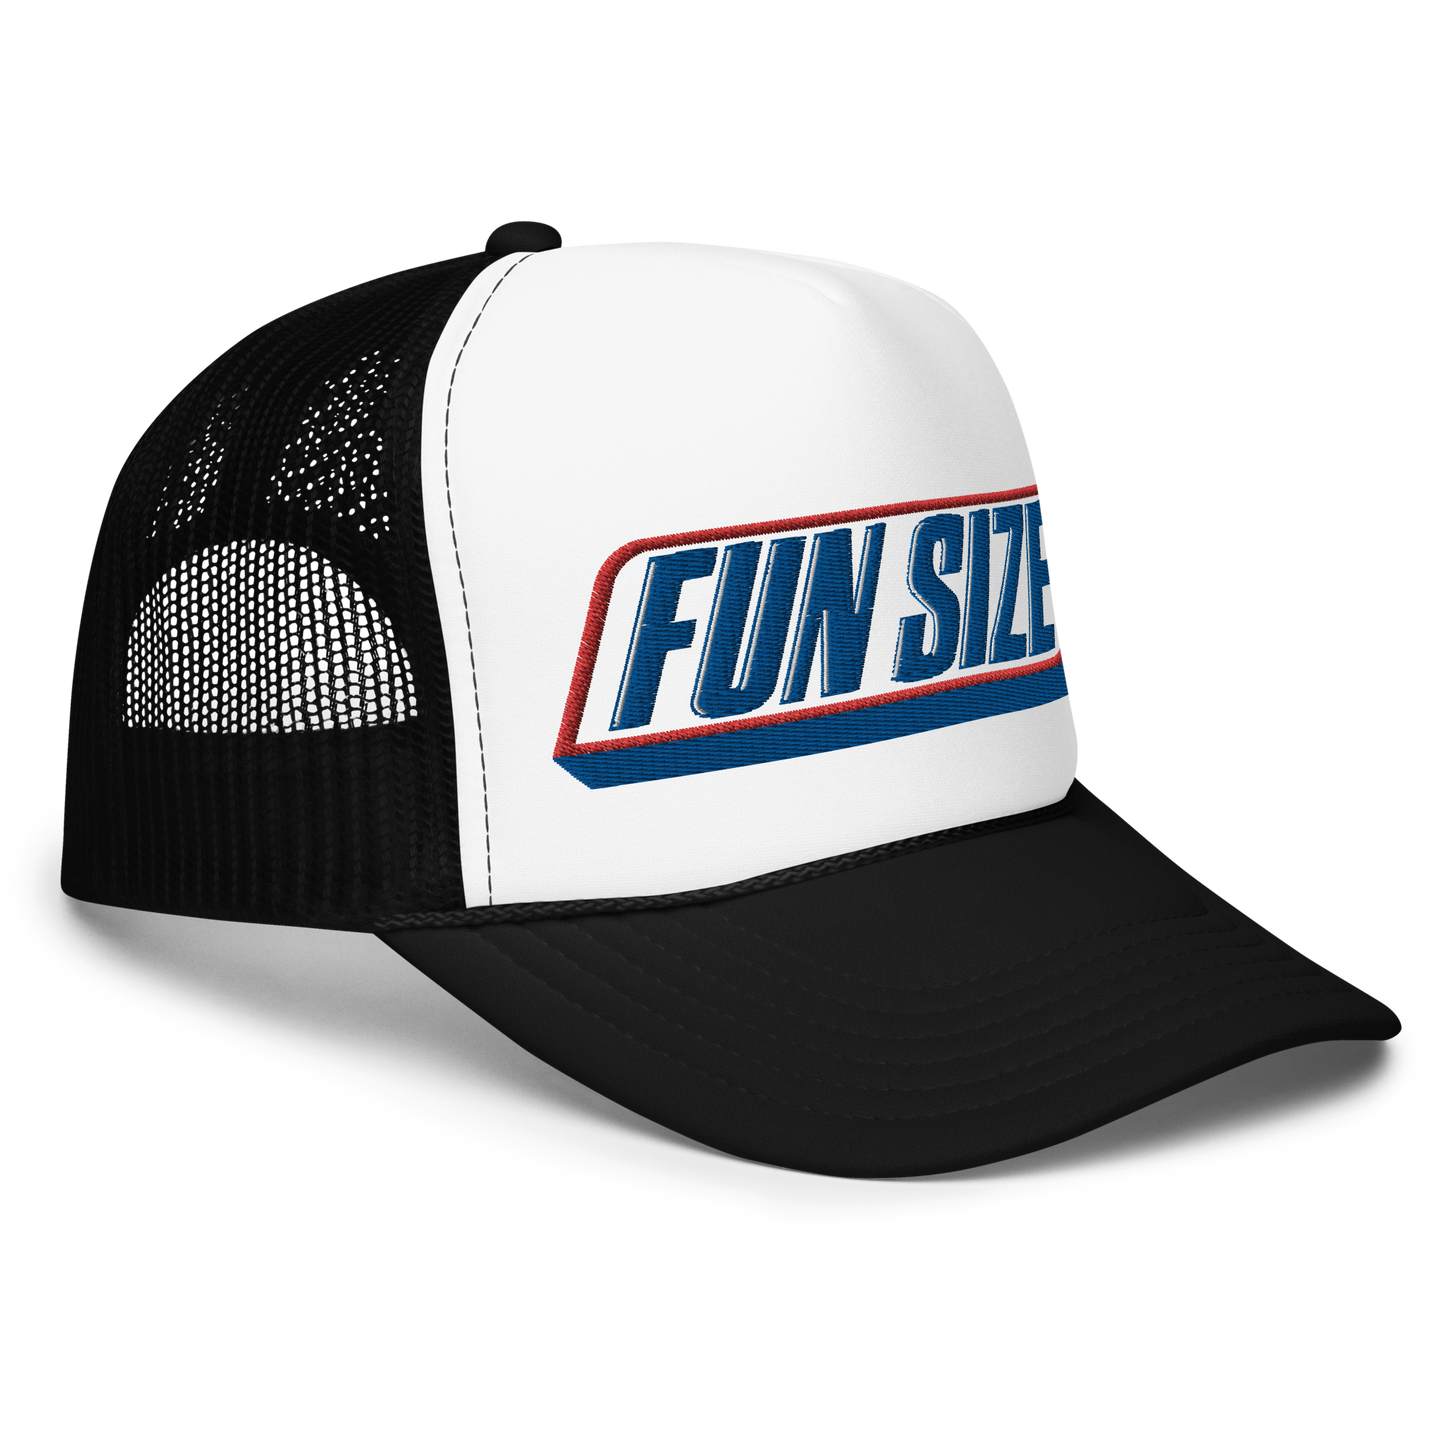 Fun Size foam trucker hat